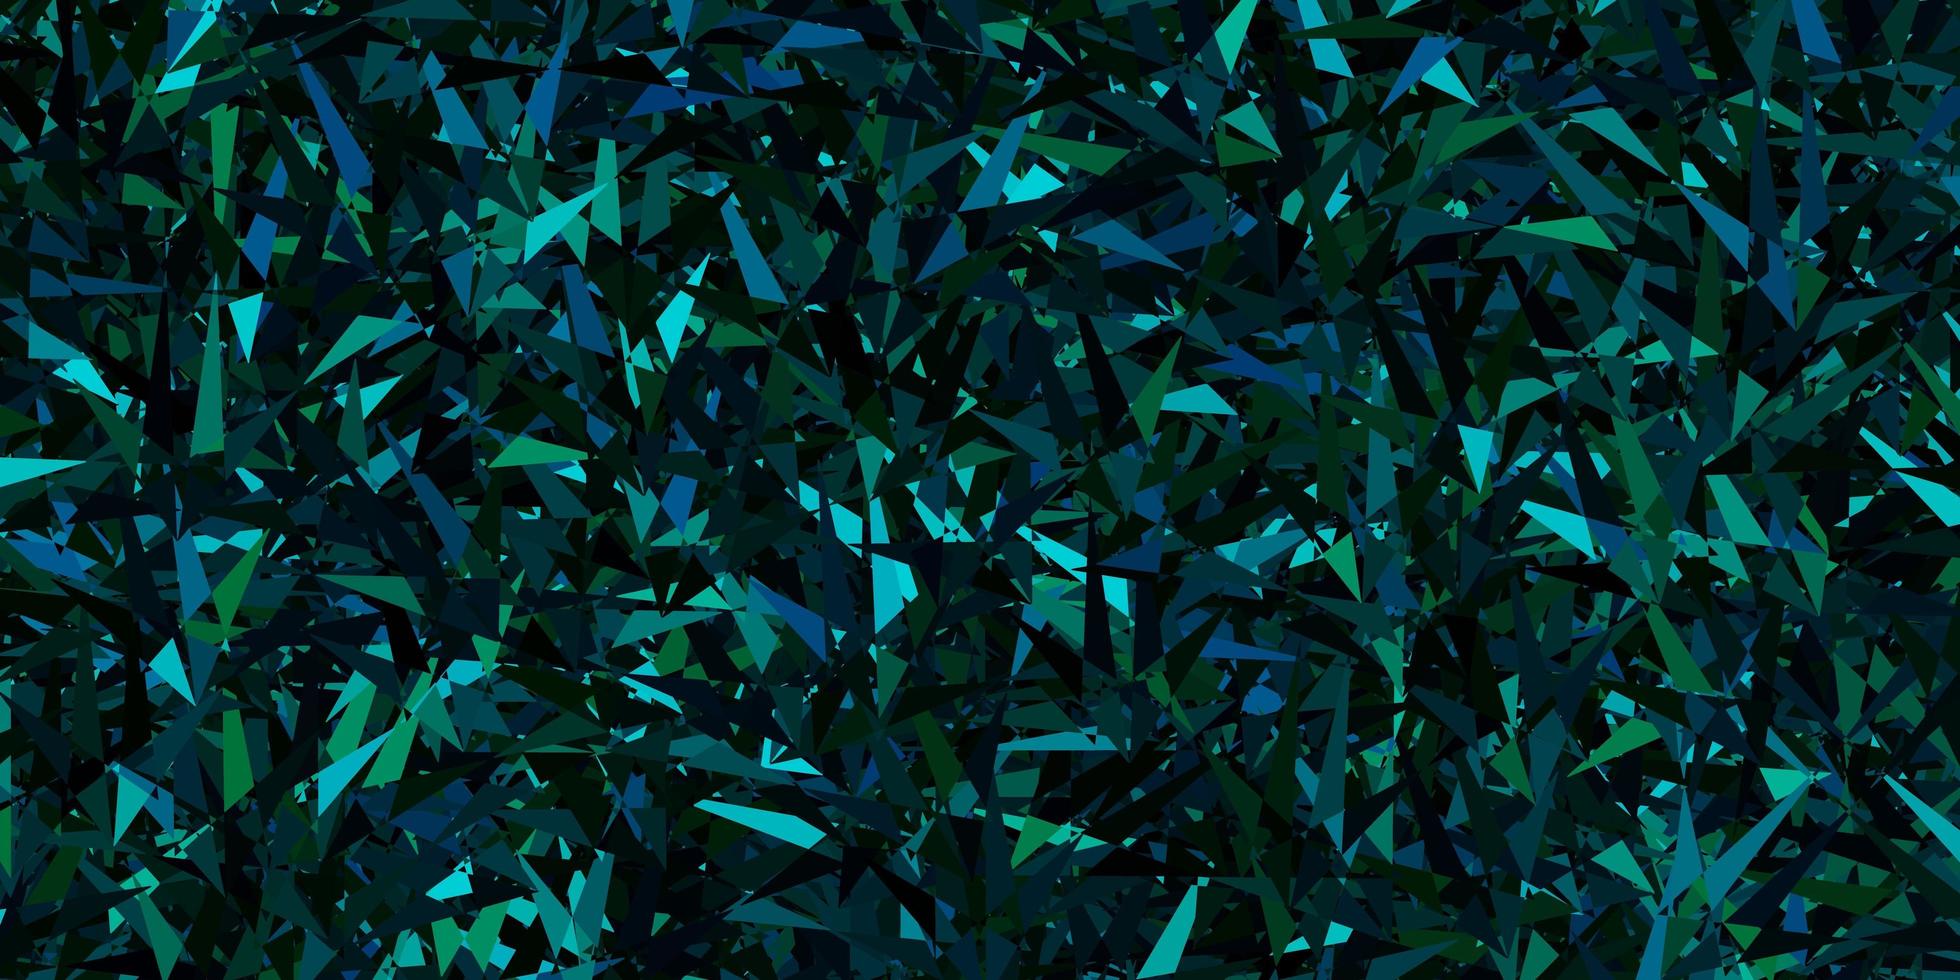 padrão de vetor azul e verde escuro com estilo poligonal.